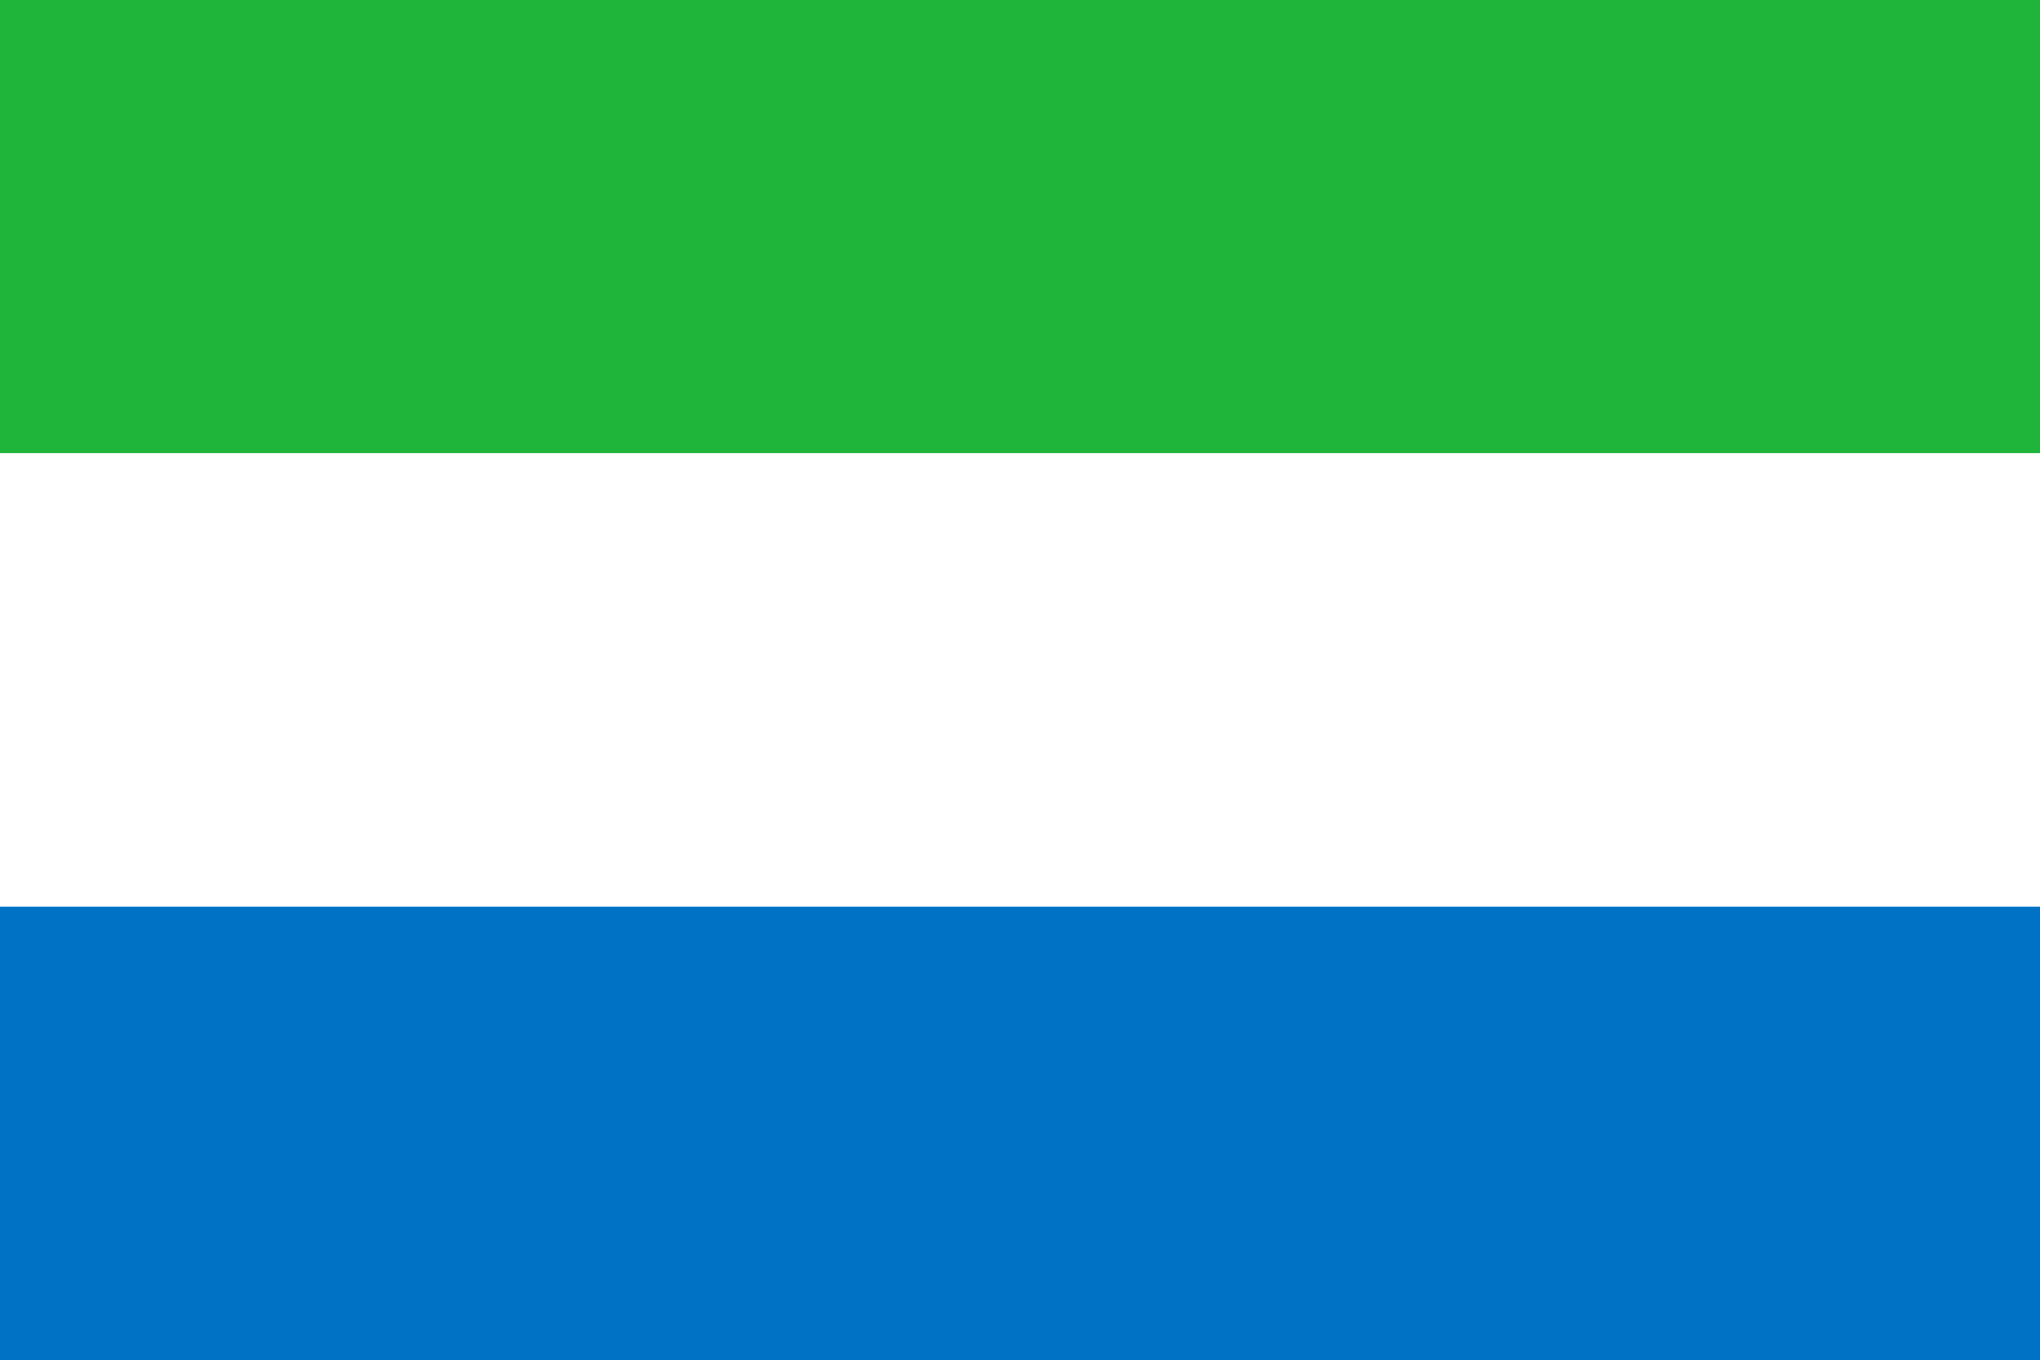 Bild der Staatsflagge Sierra Leone - mit einer Auflösung von 2040x1360 - Afrika